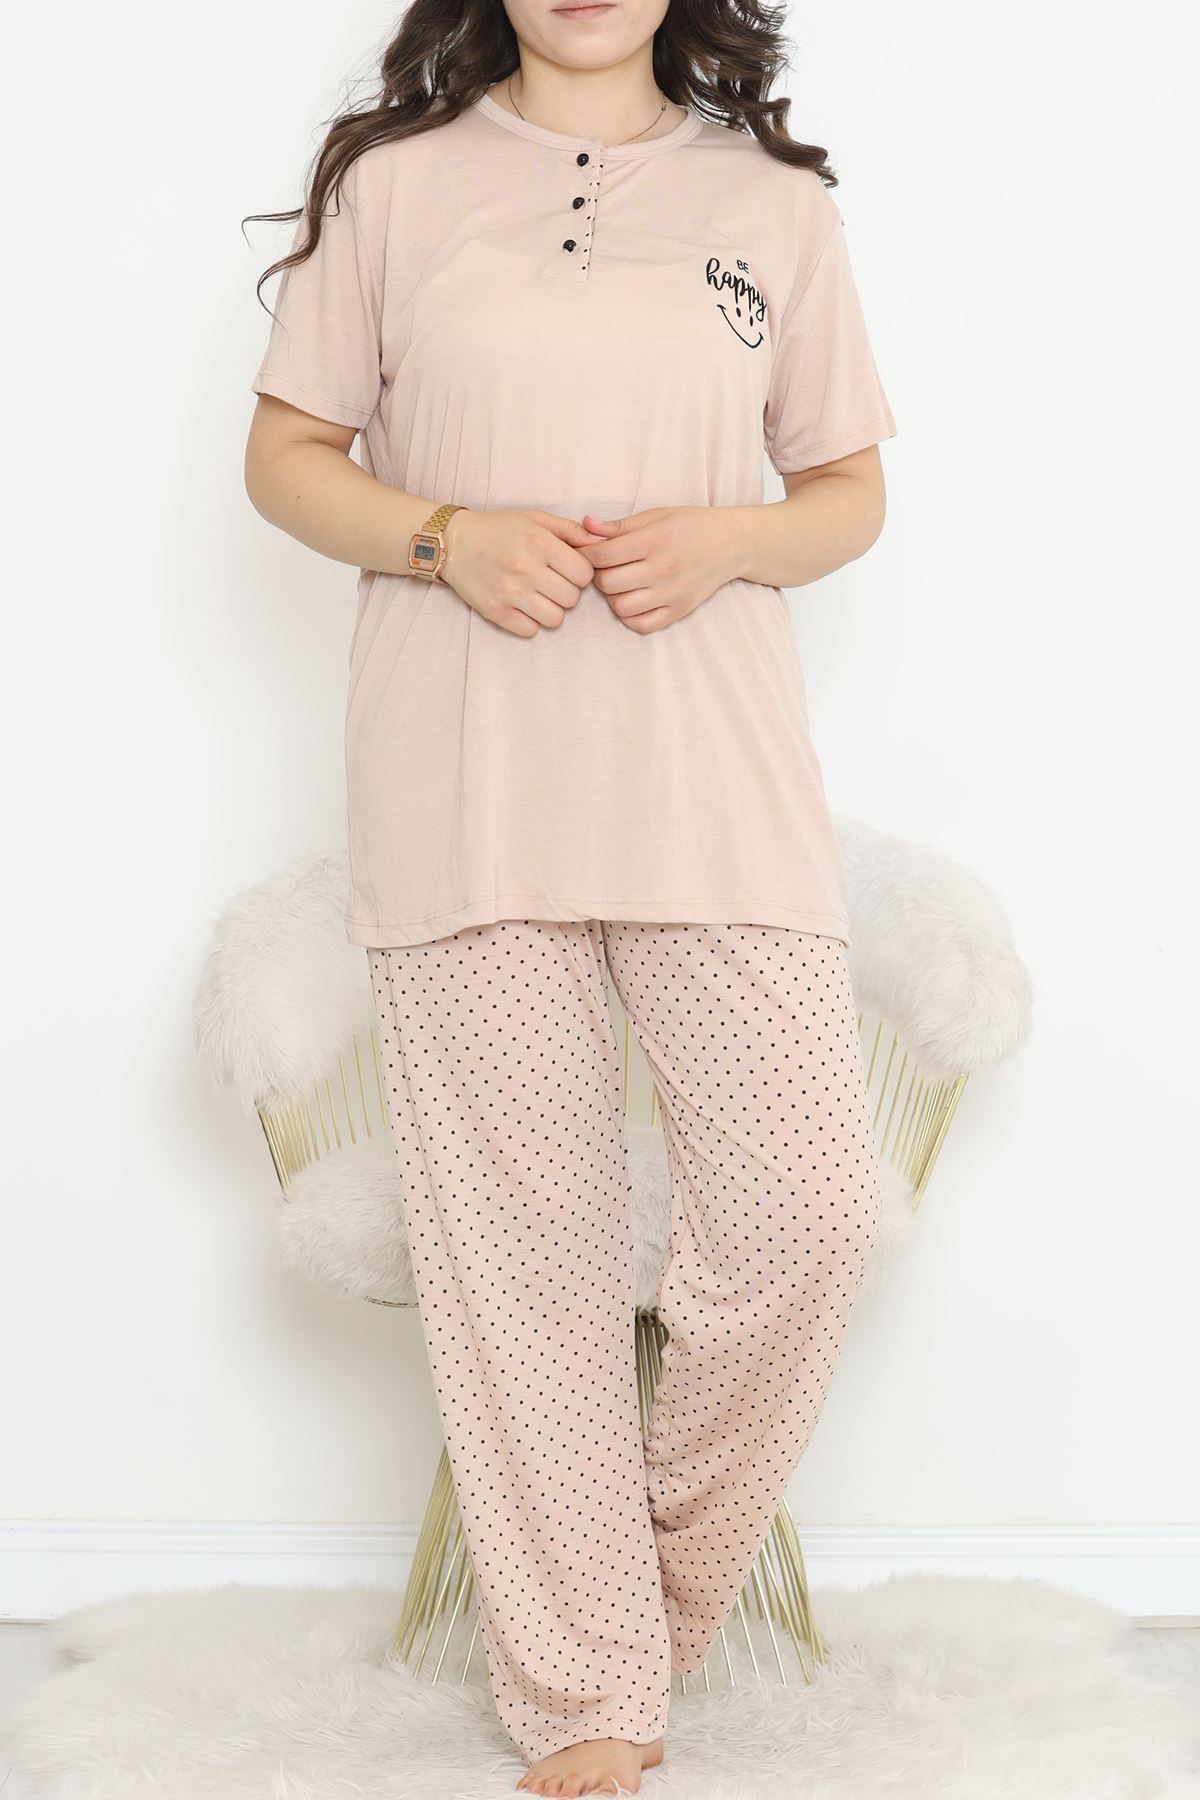 VELİZADE Büyük Beden Premium Konfor Modeli Beli Lastikli Nakış Detaylı Kısa Kollu Rahat Pamuklu Pijama Takımı